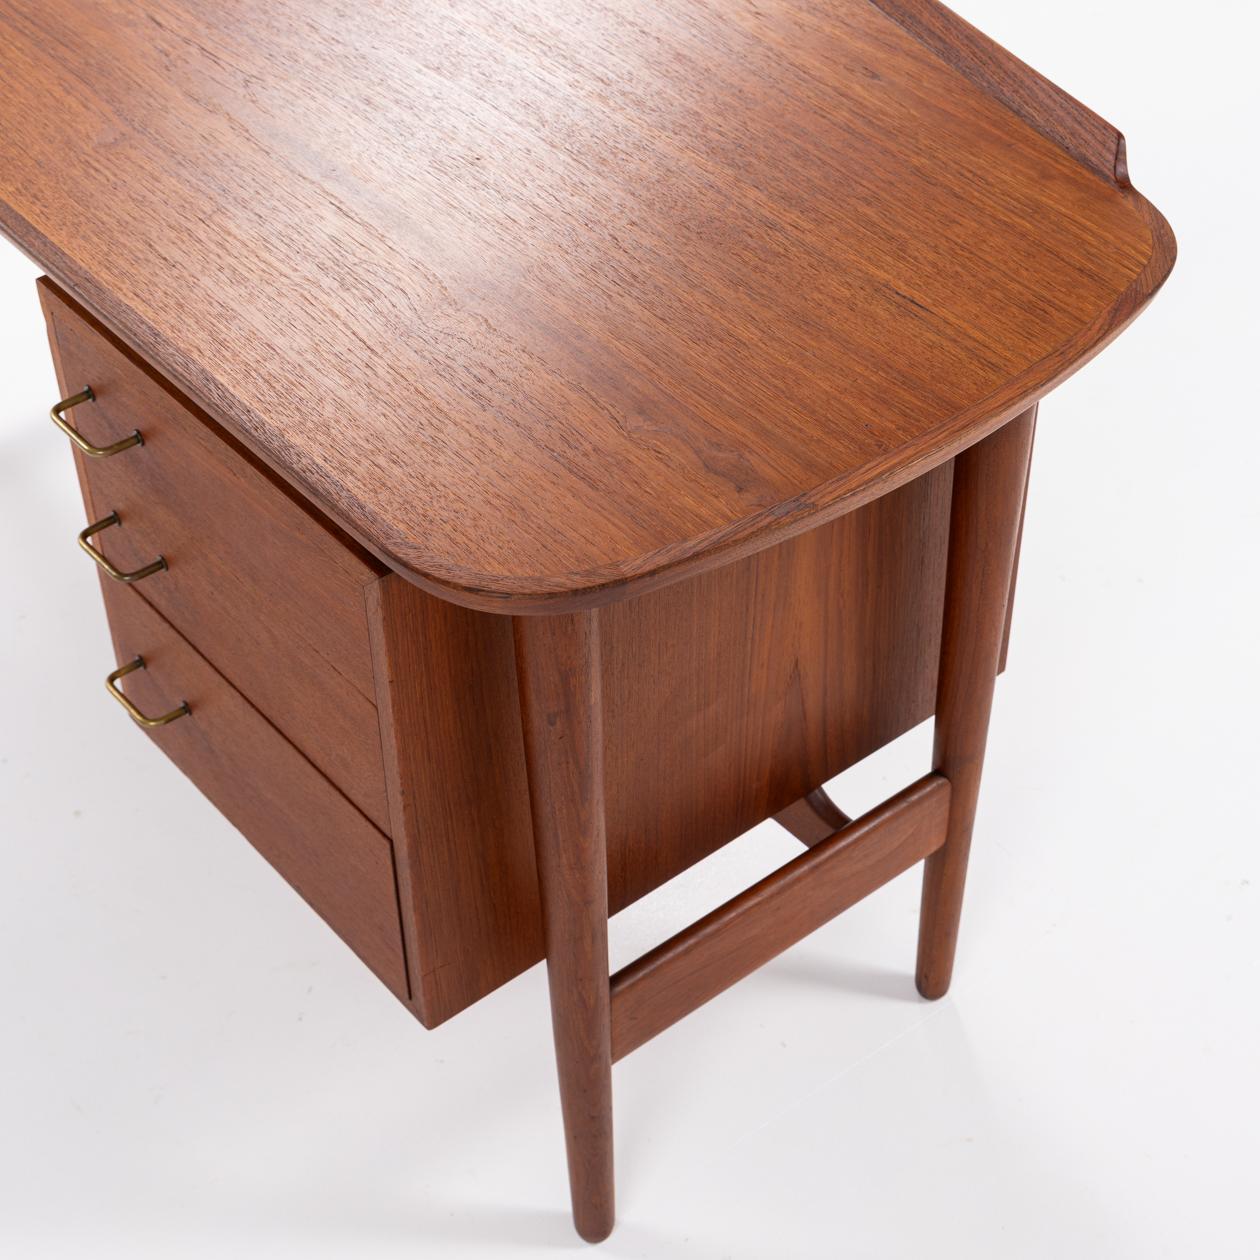 20th Century Model BO 85 - Freestanding desk by Arne Vodder